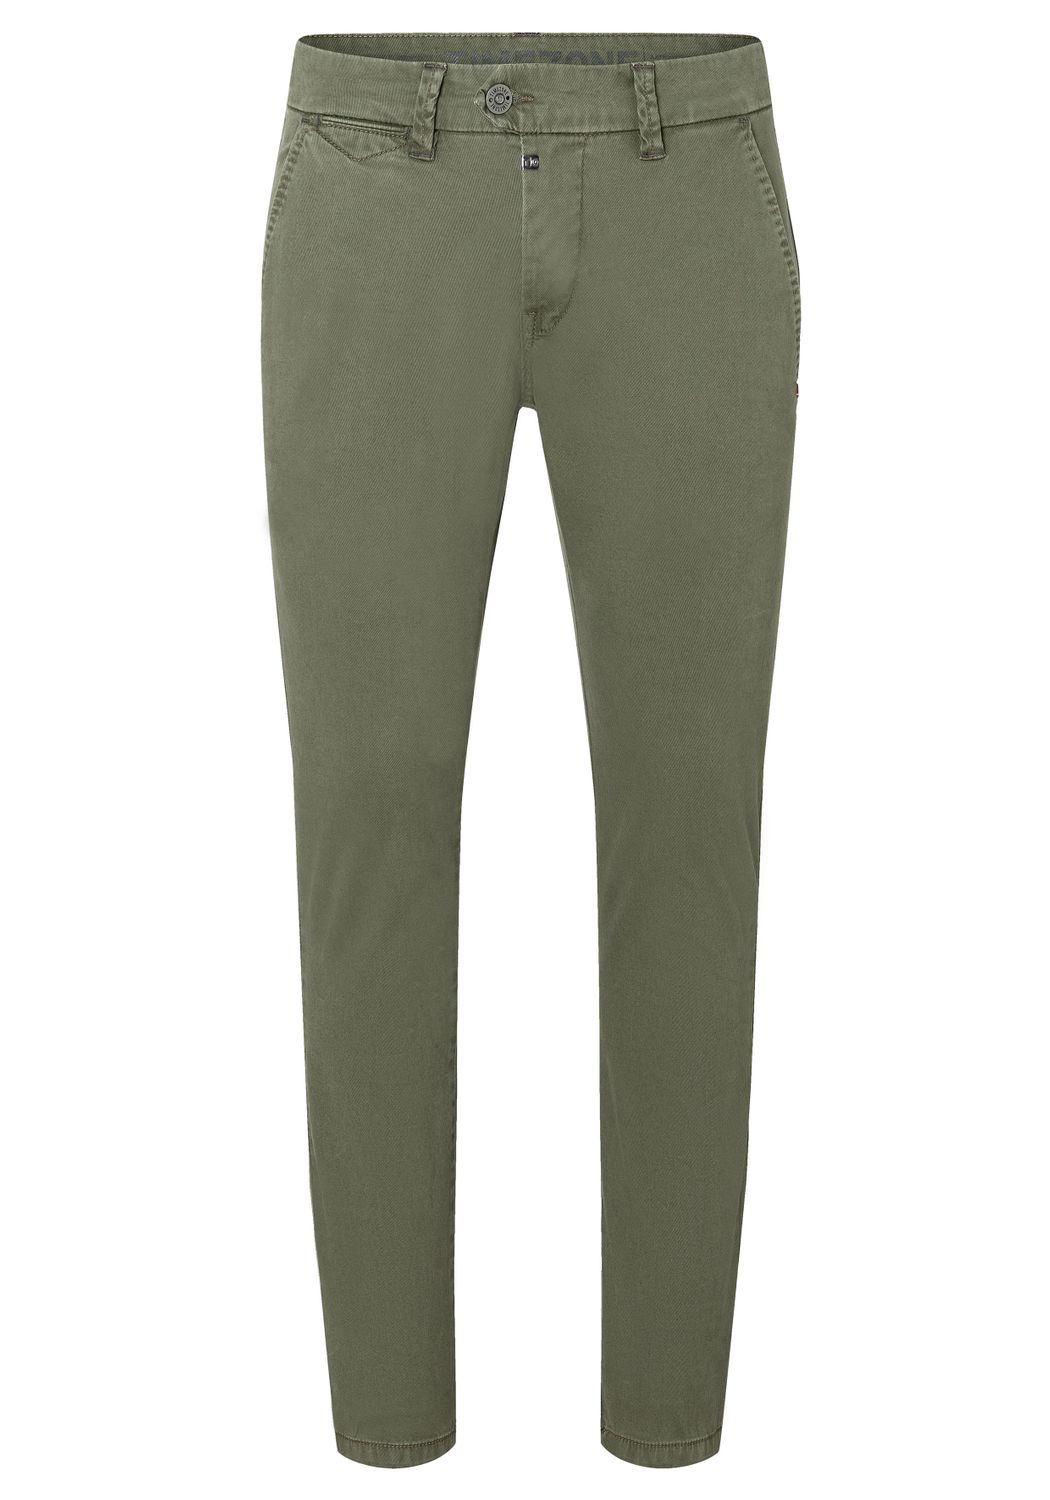 Тканевые брюки Timezone Stoff/Chino Slim JannoTZ slim, зеленый тканевые брюки timezone stoff chino slim jannotz slim оливковый